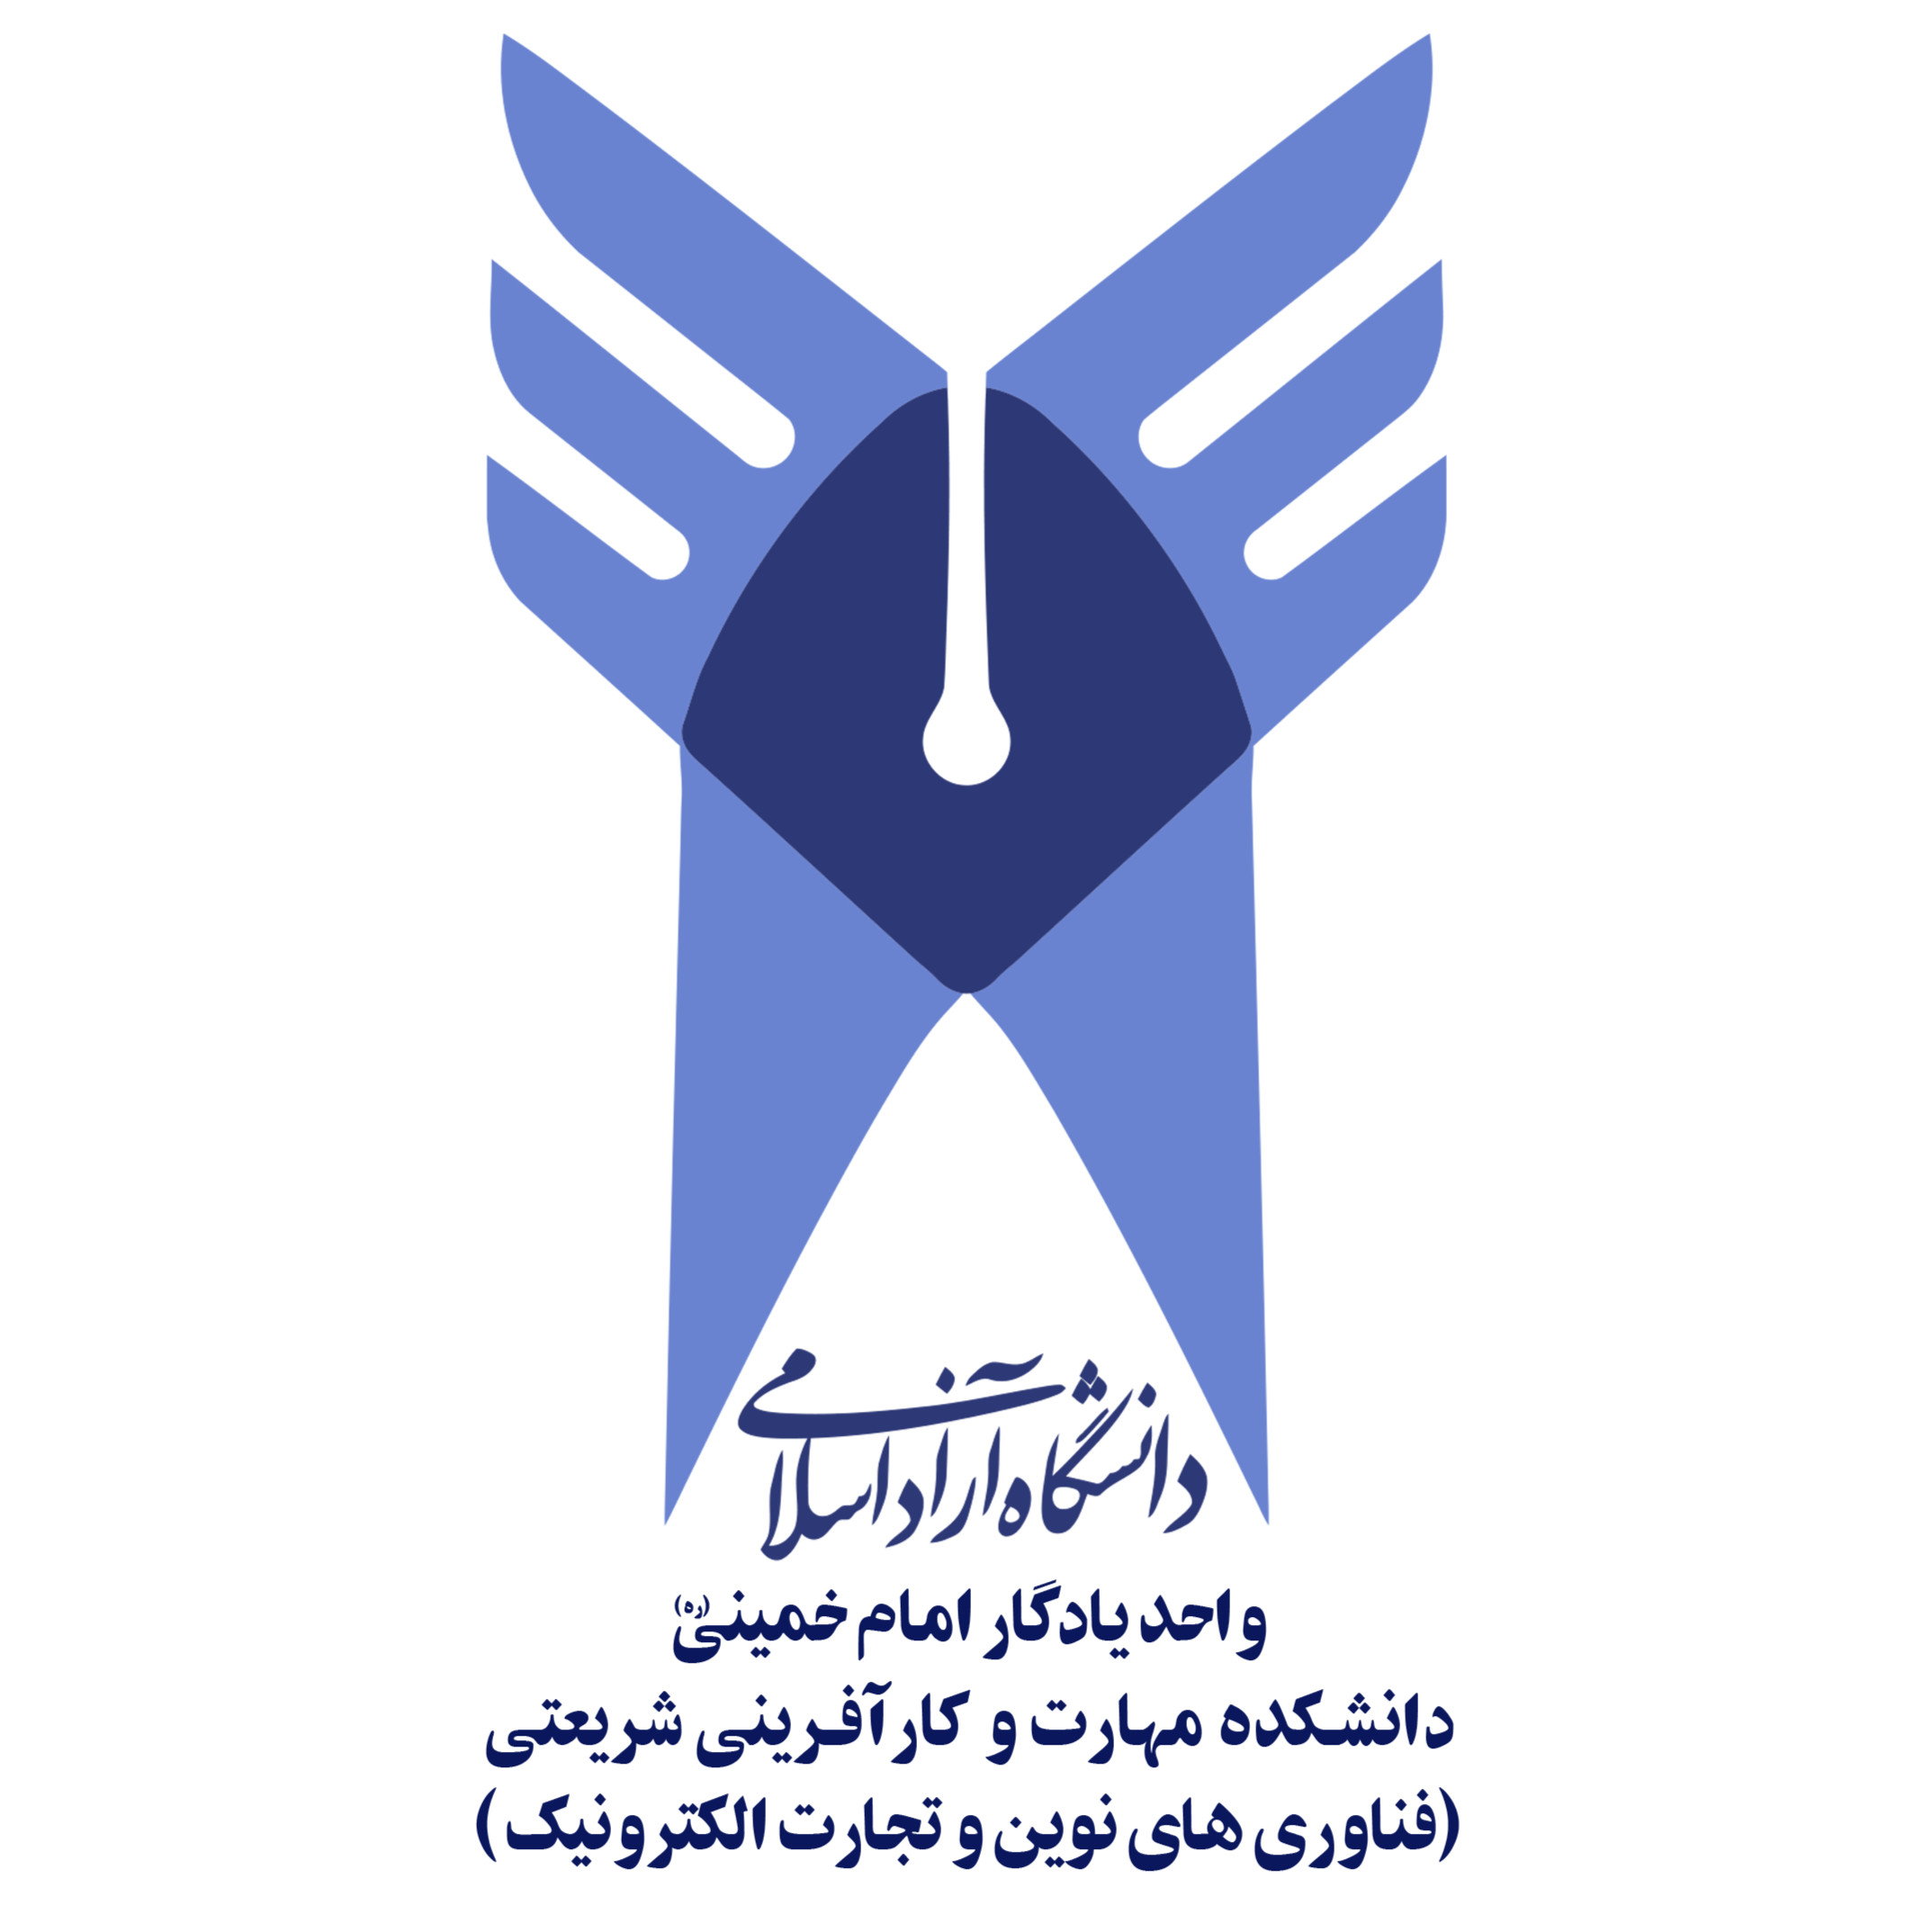 دانشکده مهارت ، کارآفرینی، فناوری های نوین و تجارت الکترونیک دانشگاه آزاد اسلامی